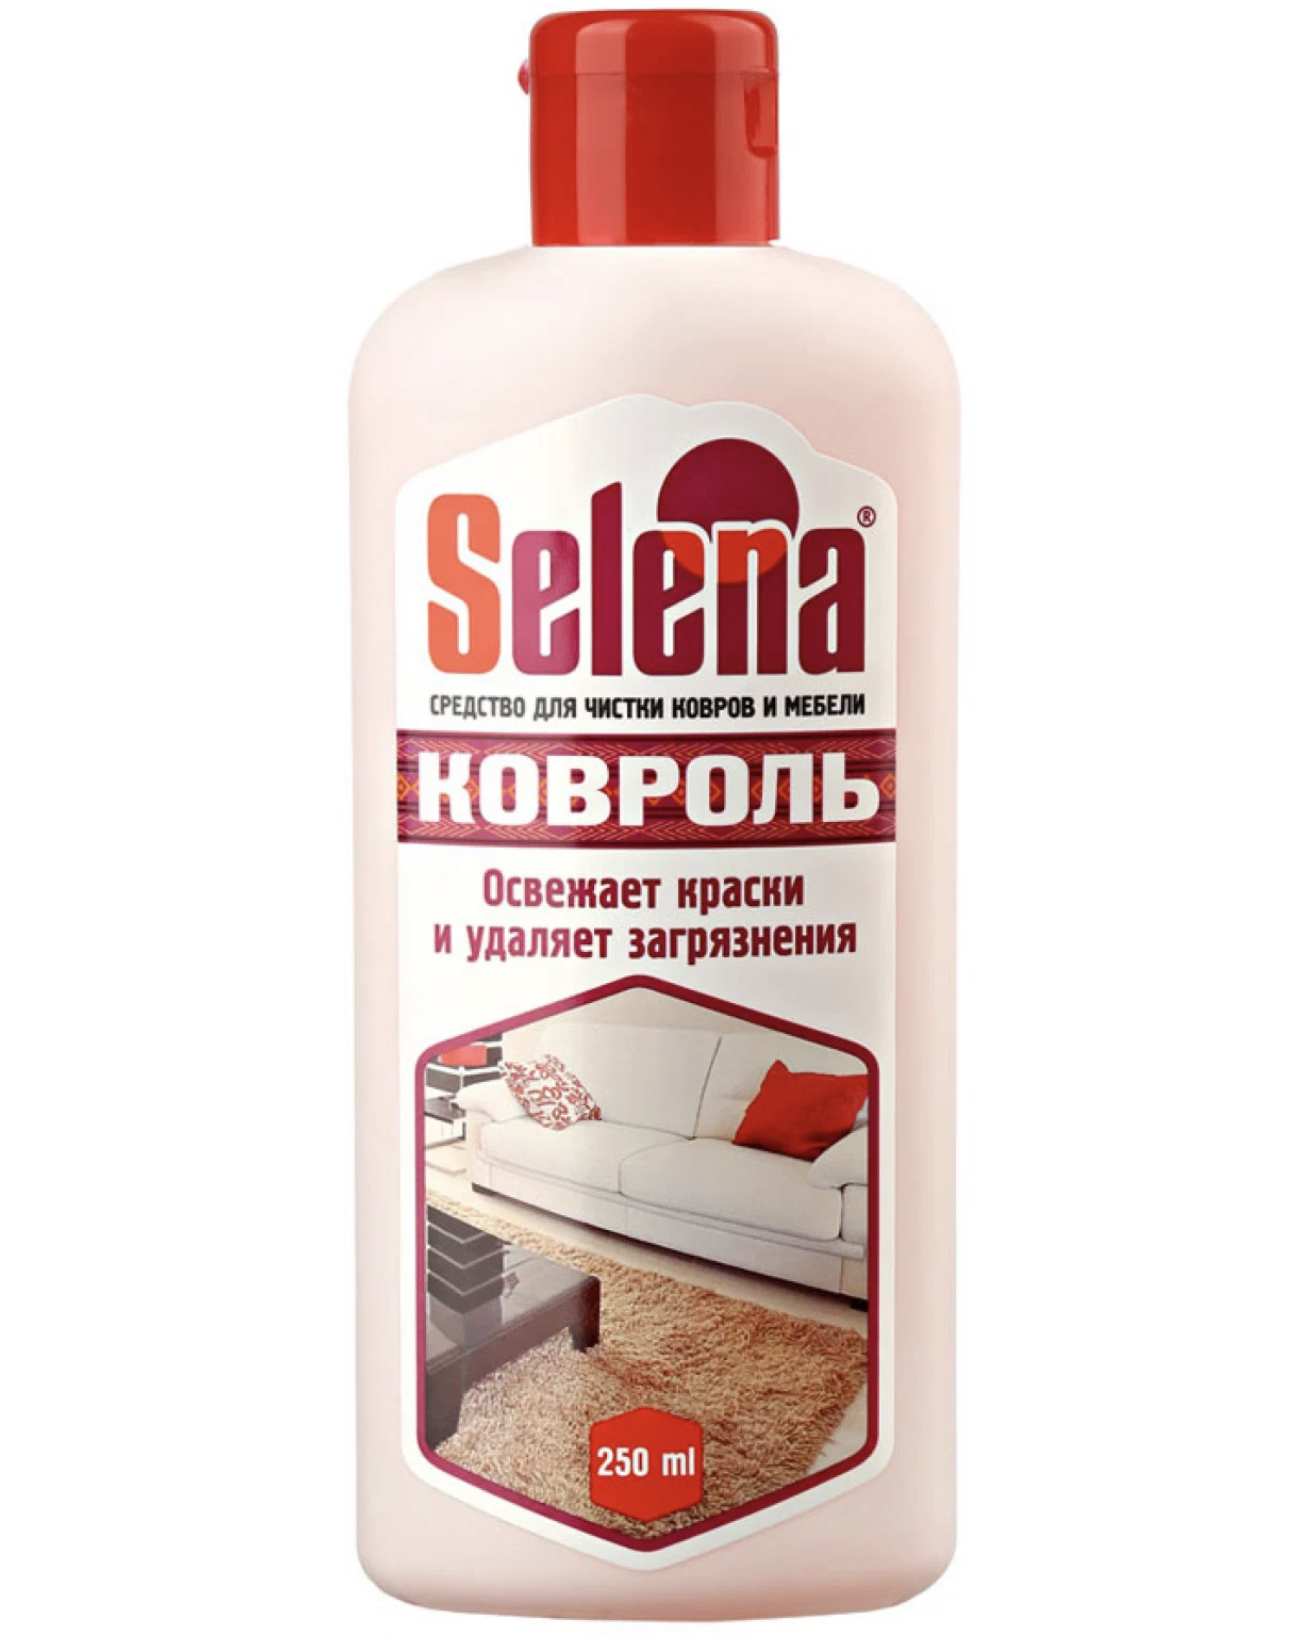 картинка Селена / Selena - Средство для чистки ковров и мебели Ковроль 250 мл